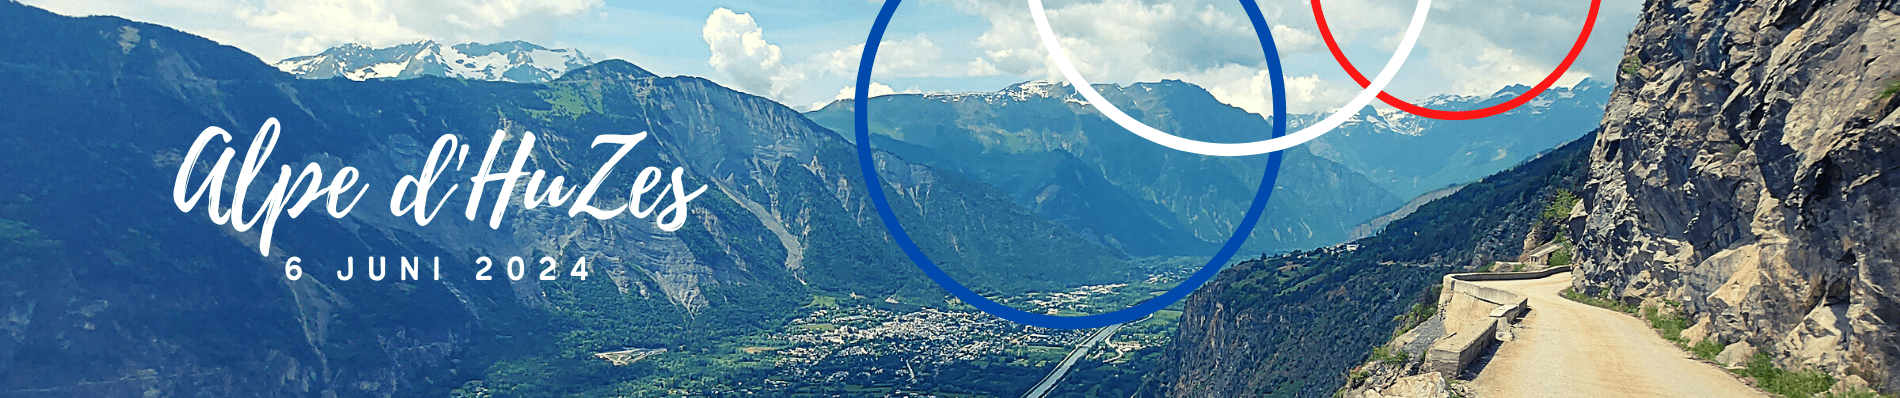 ALPE D'HUZES 2024 Alpe d'Huez Opgeven is geen optie op zoek naar accommodatie